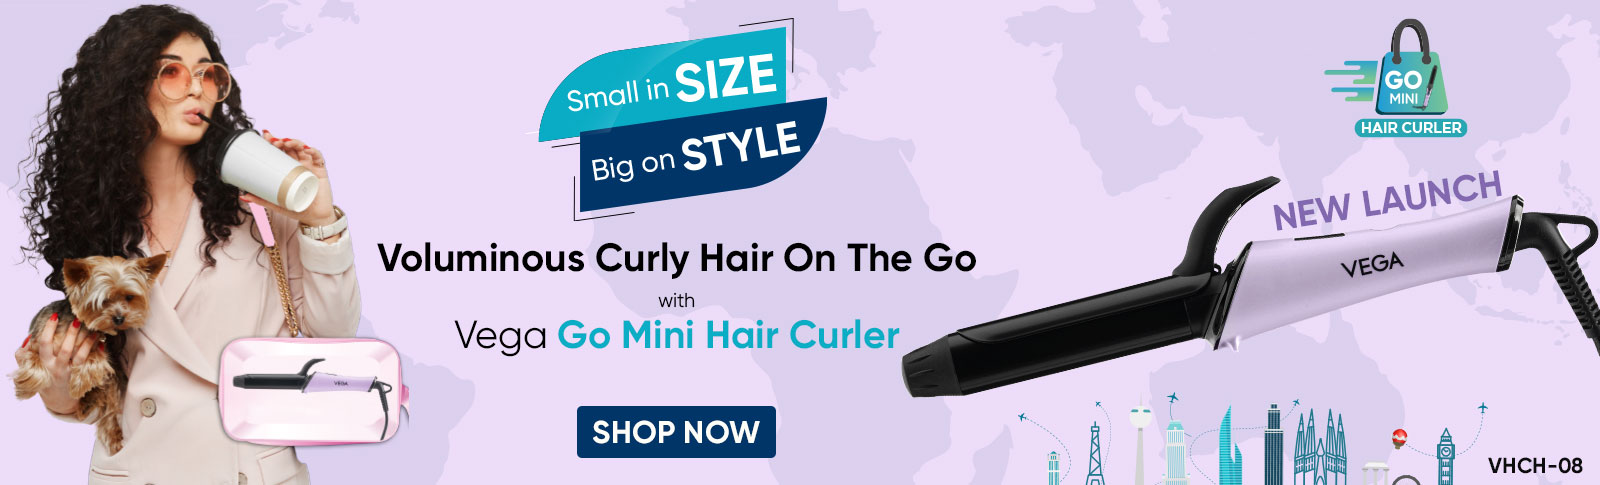 Vega Go Mini Hair Curler